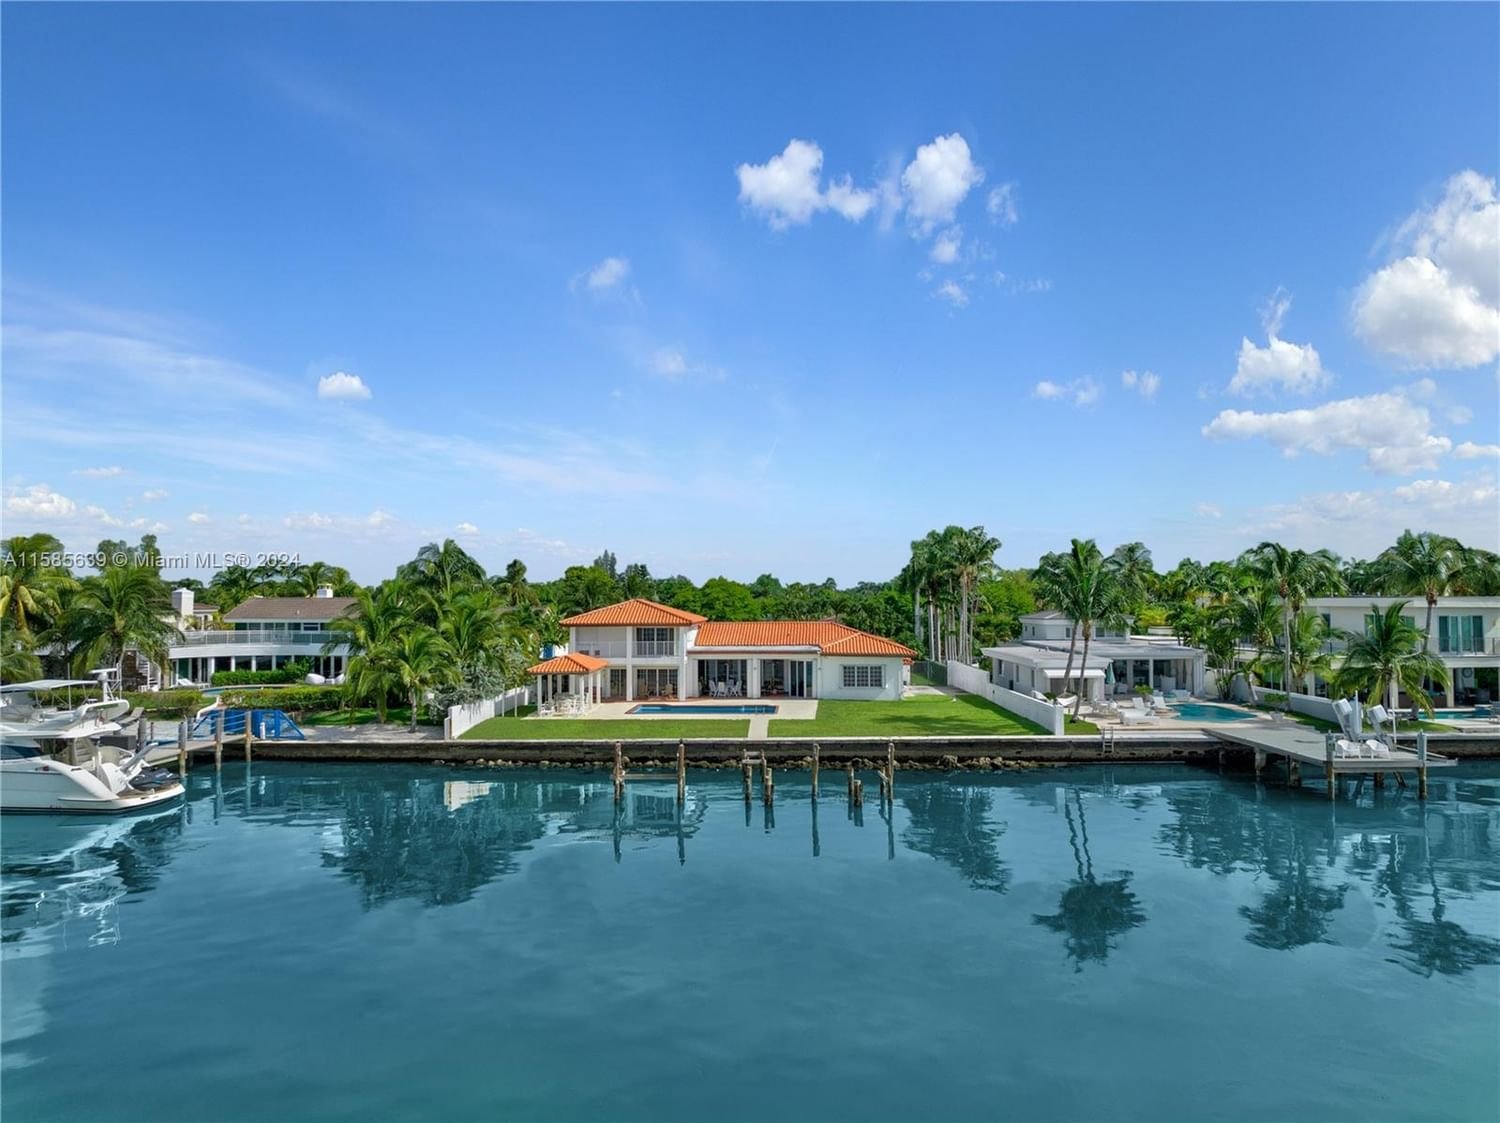 Real estate property located at 1730 Bay Dr, Miami-Dade County, ISLE OF NORMANDY MIAMI VI, Miami Beach, FL